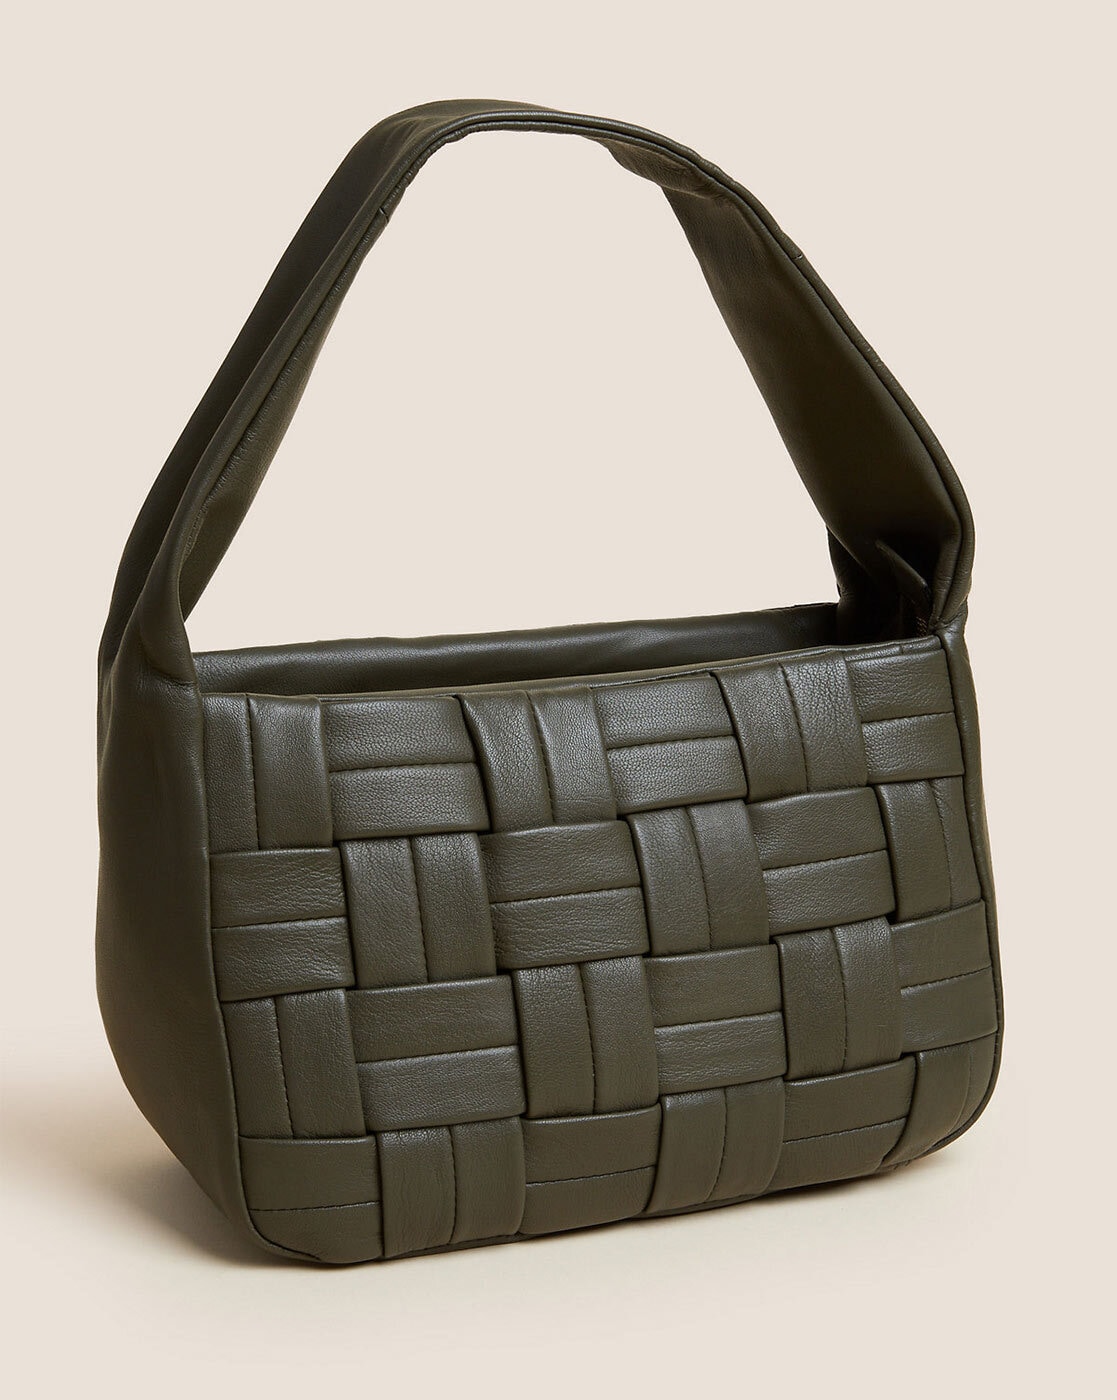 Buy Black Flirt 02 Sling Bag Online - Hidesign